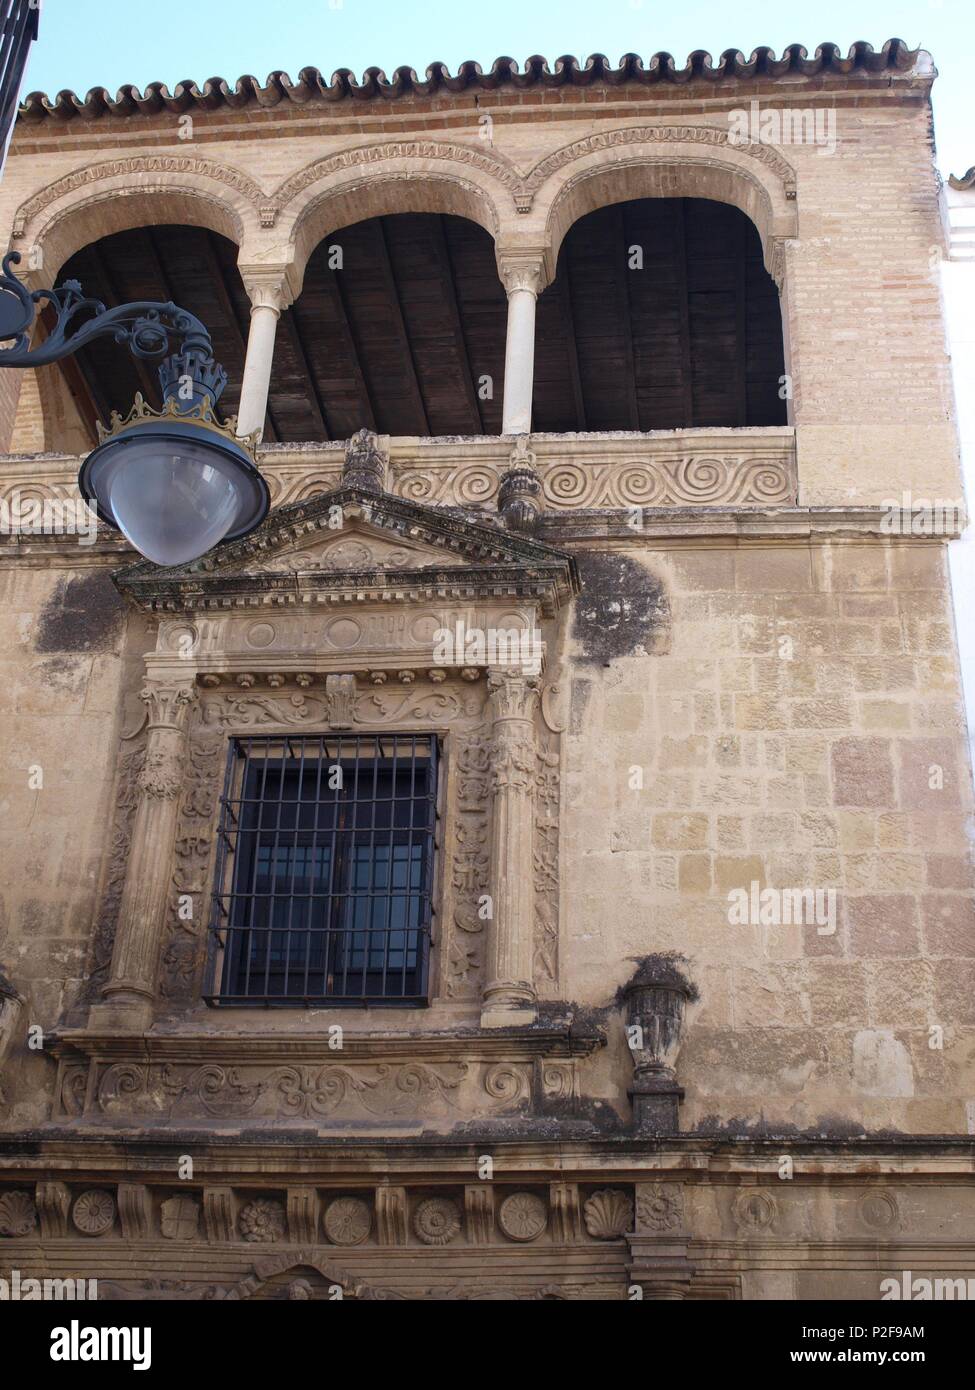 Le Palacio de los Villalones, tambiŽn conocido como el Palacio del Orive, arquitectura cordobesa civile renacentista, construido por Hernan Ruiz II en 1560. Sede de la concejalia de Cultura. Cordoba. Banque D'Images